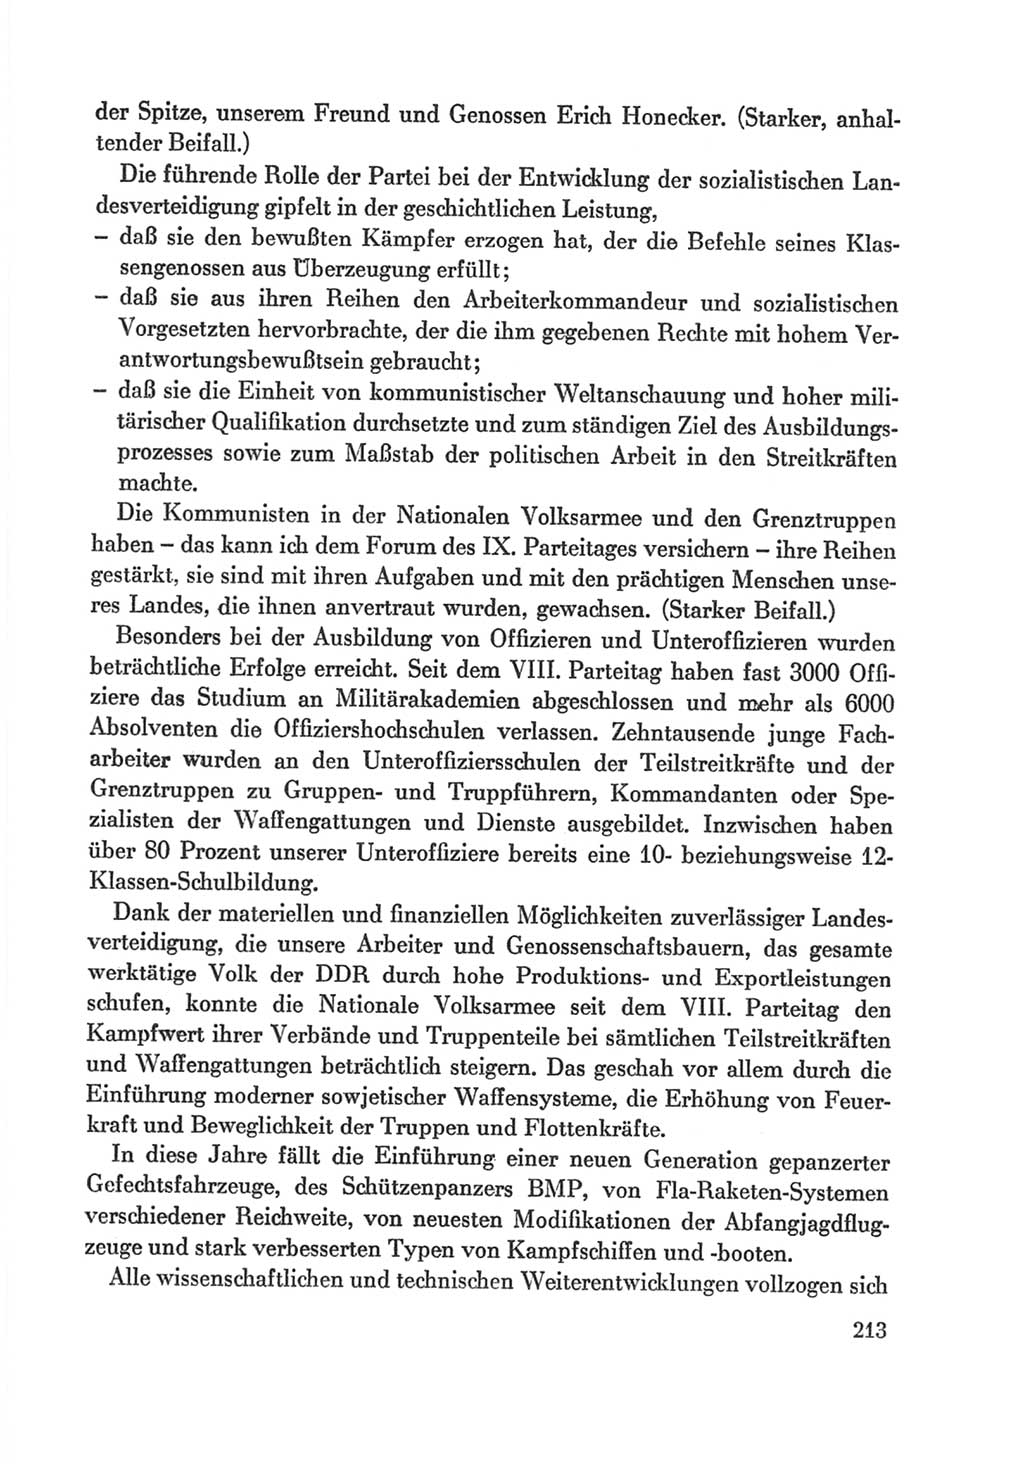 Protokoll der Verhandlungen des Ⅸ. Parteitages der Sozialistischen Einheitspartei Deutschlands (SED) [Deutsche Demokratische Republik (DDR)] 1976, Band 1, Seite 213 (Prot. Verh. Ⅸ. PT SED DDR 1976, Bd. 1, S. 213)